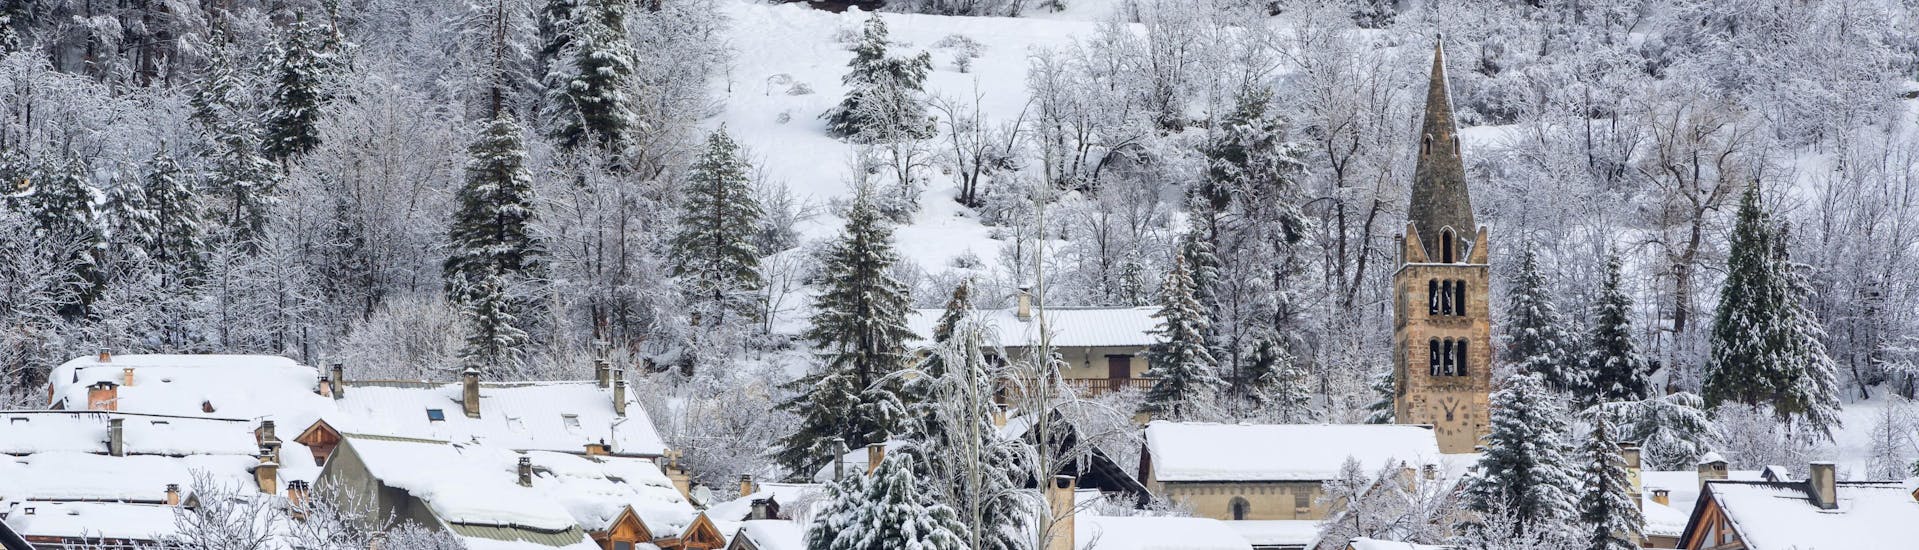 Das kleine Dorf Serre-Chevalier Villeneuve ist mit Schnee bedeckt.